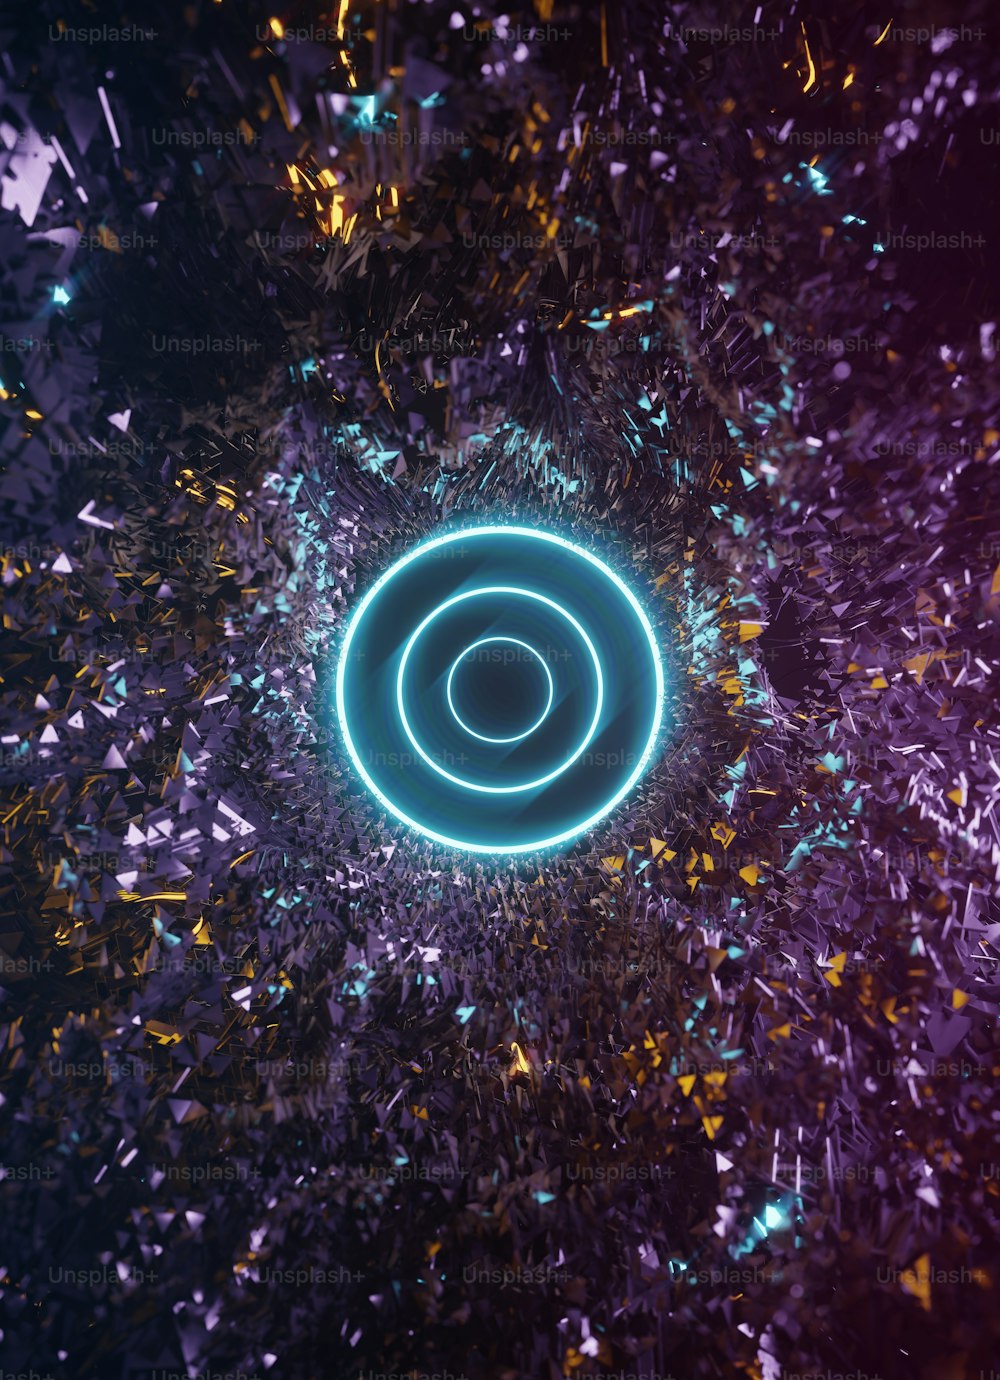 Un círculo azul rodeado de confeti y confeti